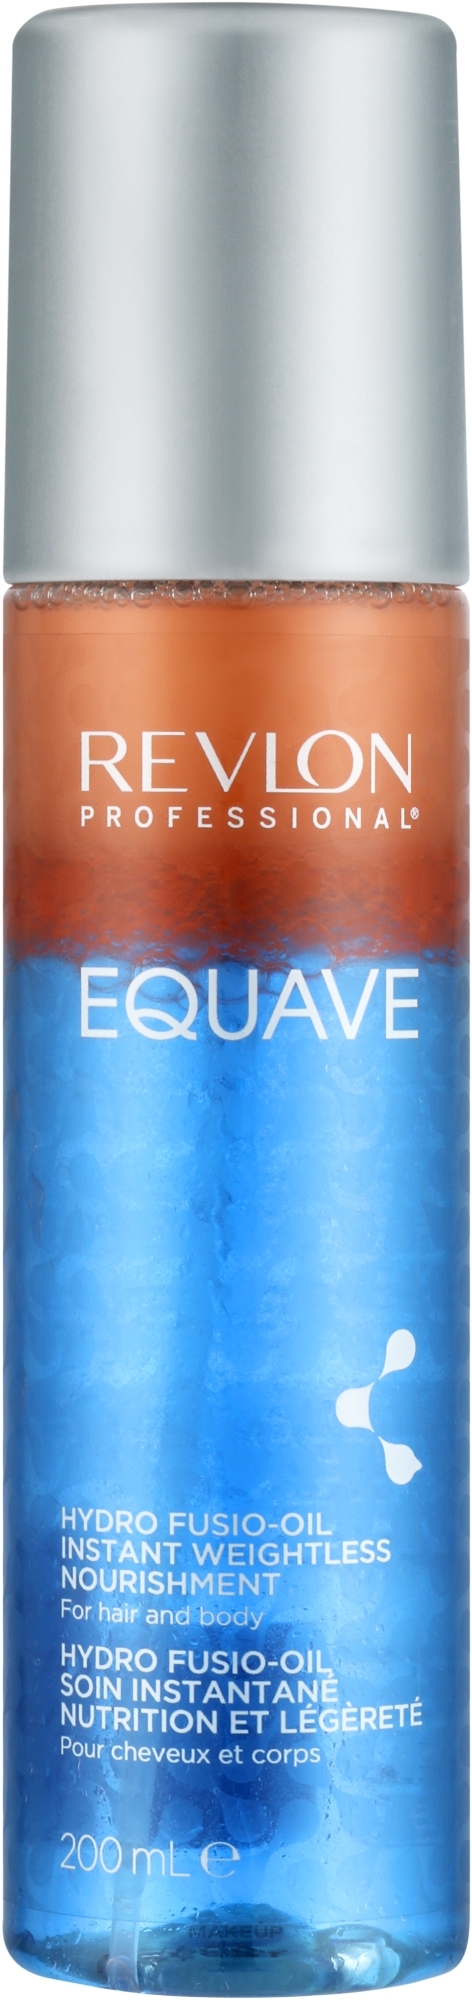 Spray do włosów i ciała - Revlon Professional Equave Hydro Fusio-Oil Instant Weightless Nourishment — Zdjęcie 200 ml